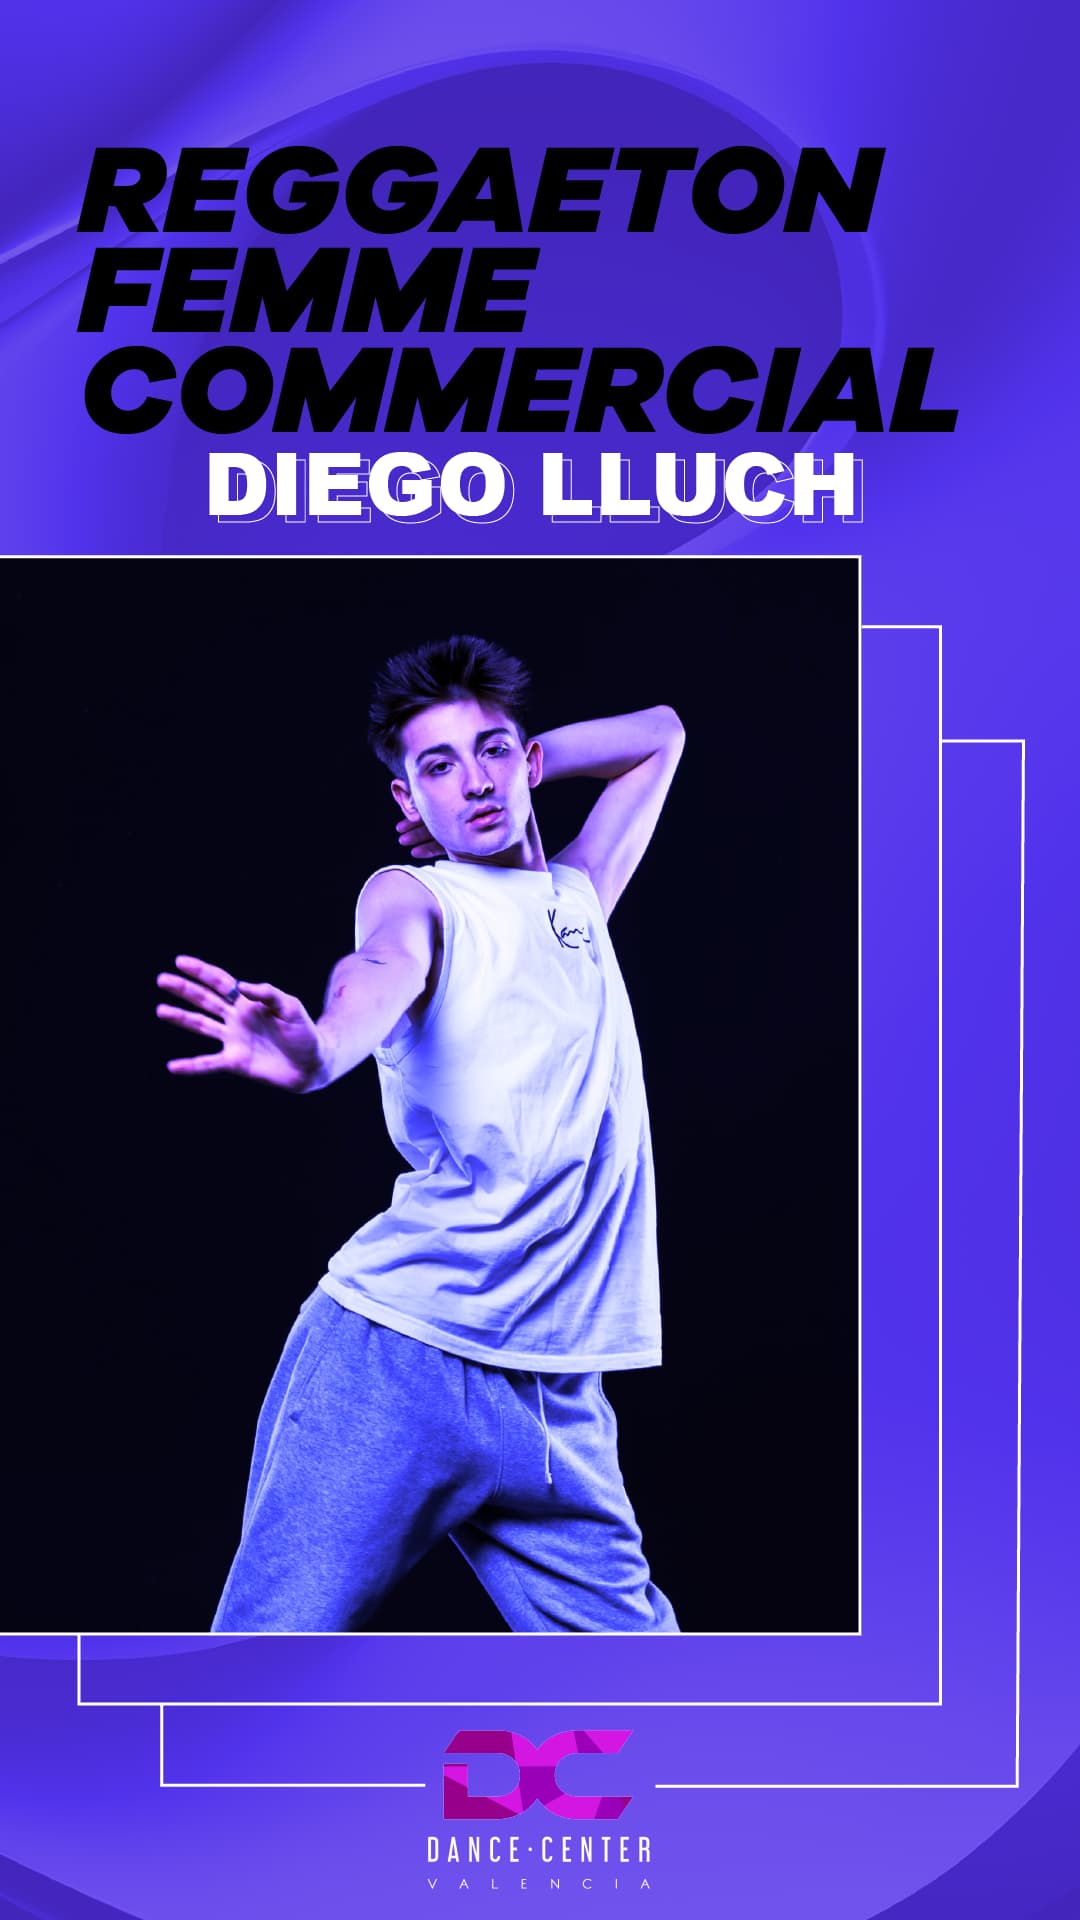 Diego Lluch Reggaeton Femme Commercial